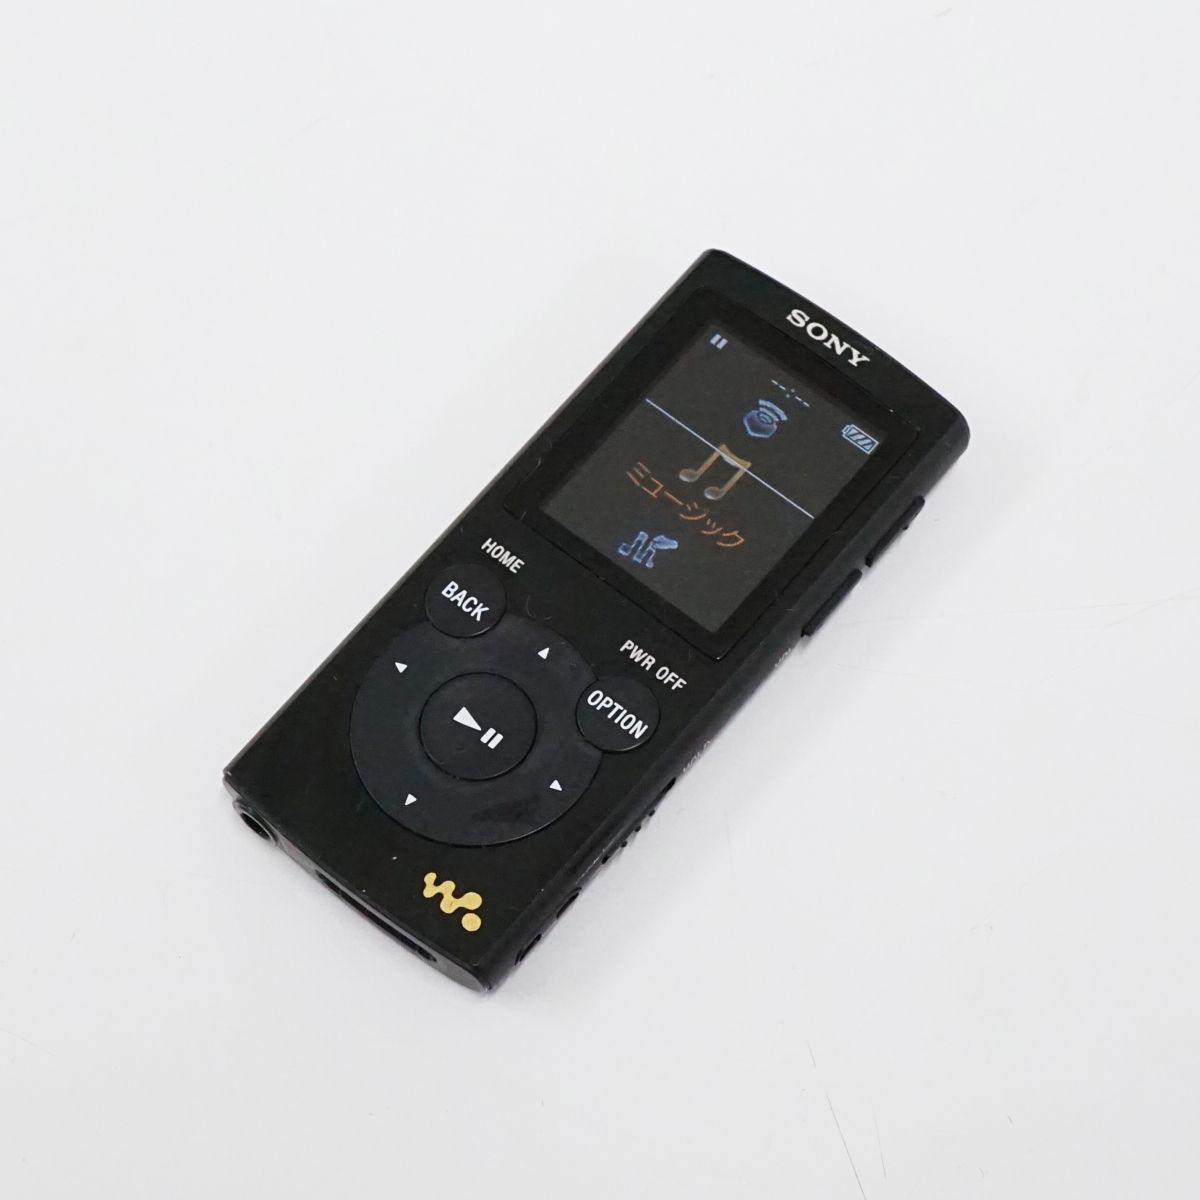 SONY ウォークマン NW-E063 4GB USED美品 本体のみ ブラック デジタルミュージックプレーヤー 【難有】 T V9004_画像1